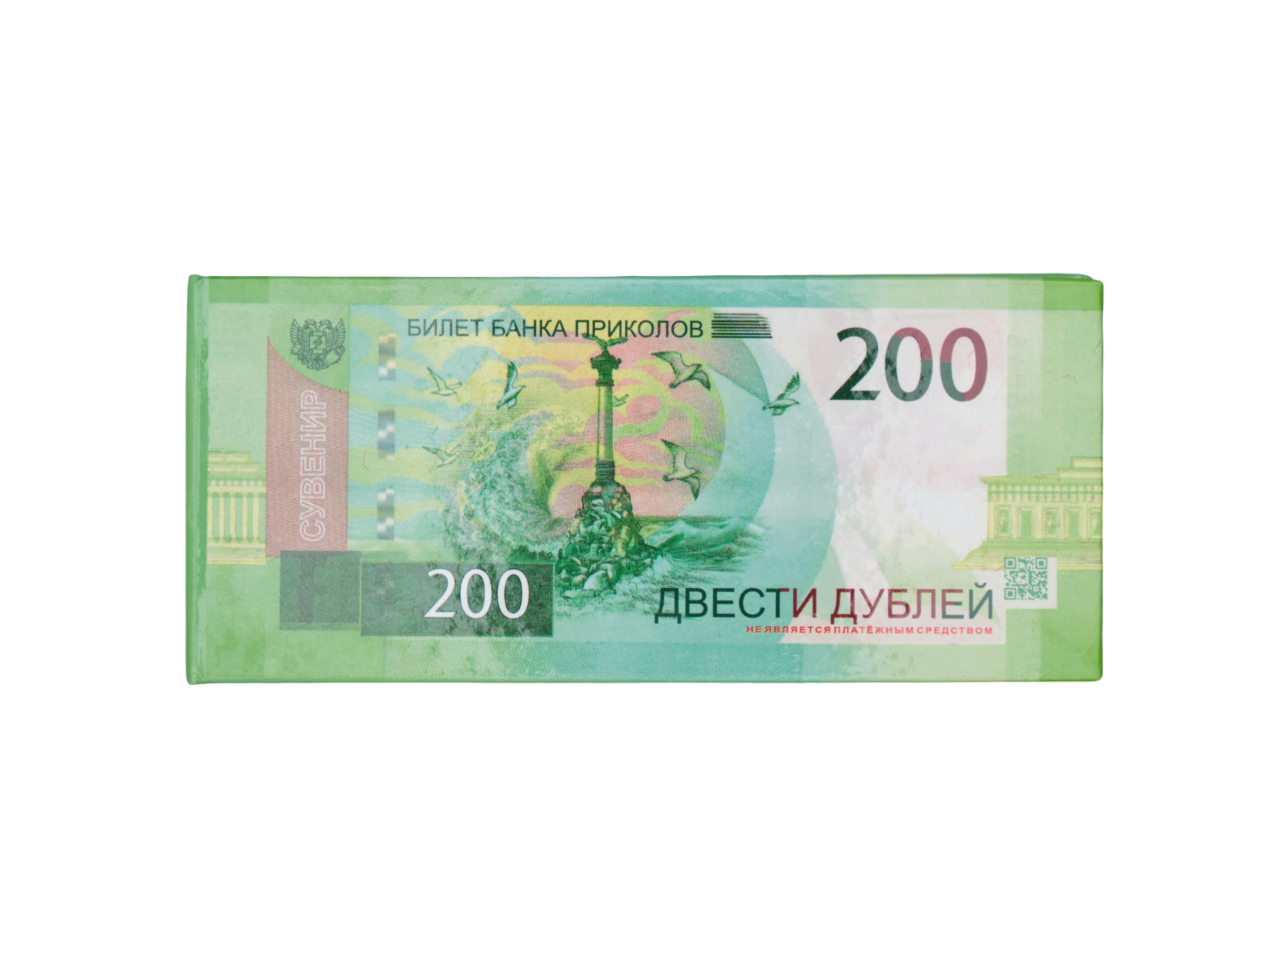 Отрывной блокнот-визитка Филькина грамота OV00000024 пачка денег 200 рублей